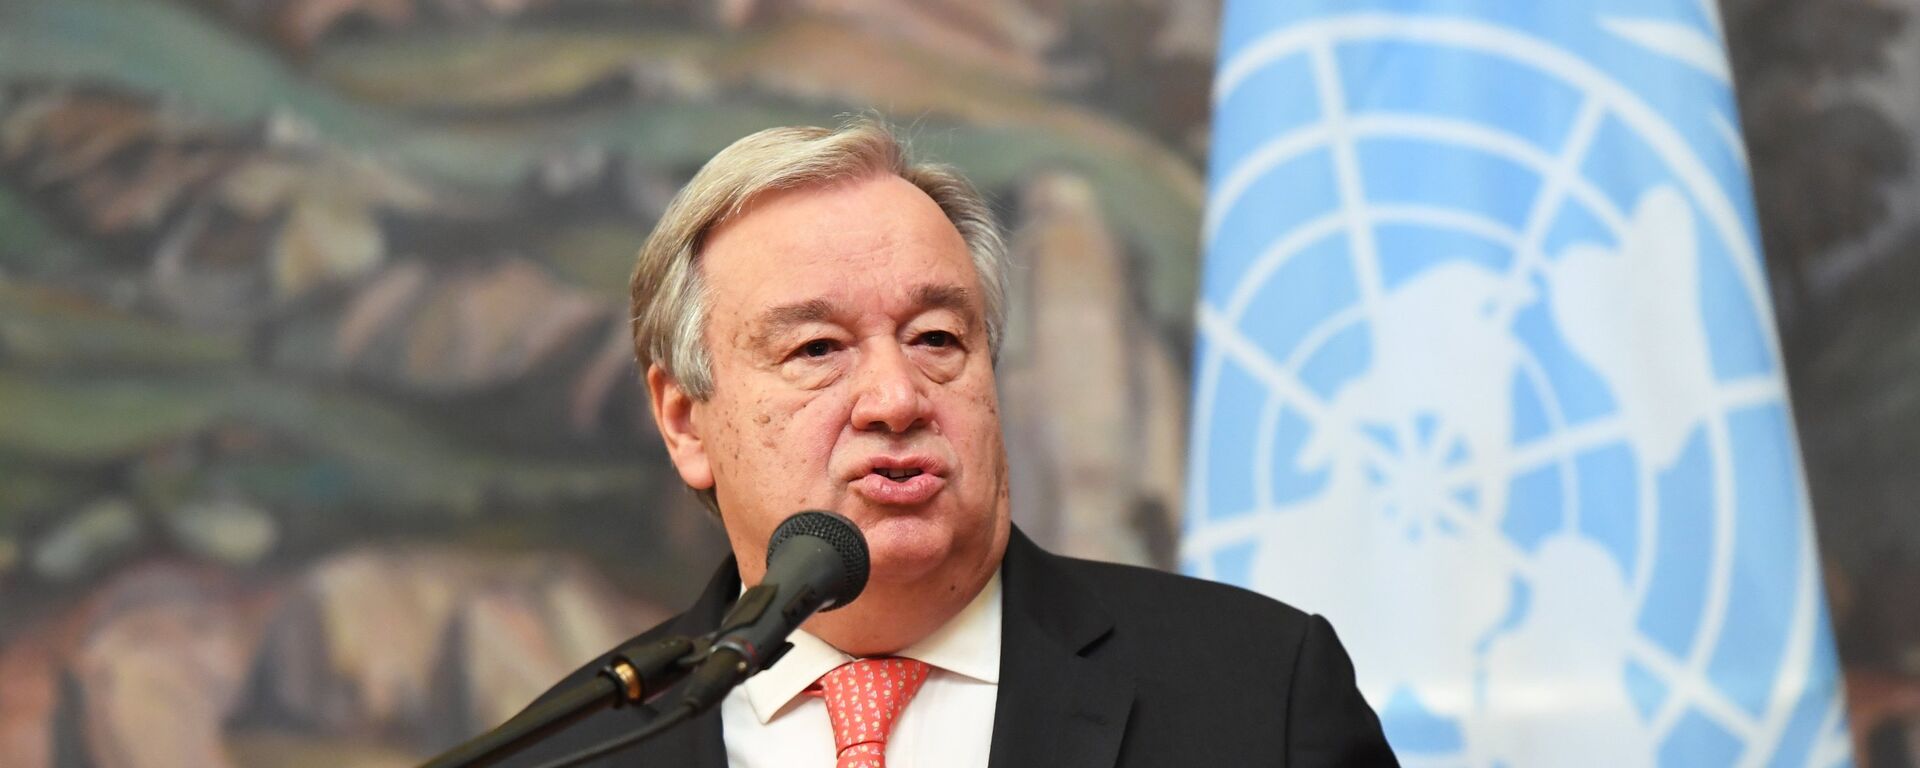 Antonio Guterres, secretario general de la ONU - Sputnik Mundo, 1920, 08.03.2021